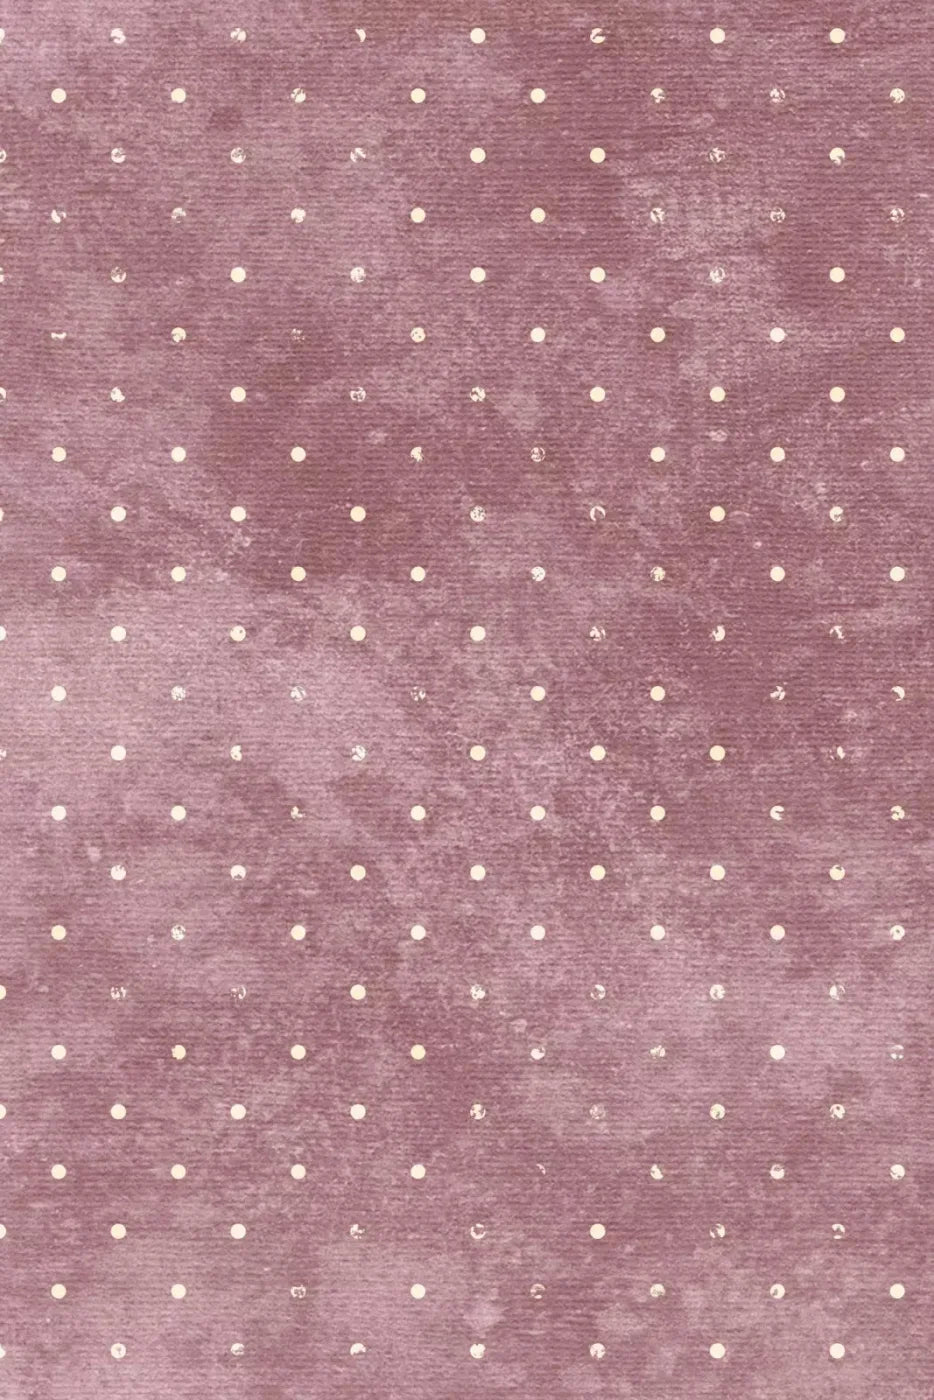 Cecelia 4X5 Rubbermat Floor ( 48 X 60 Inch ) Backdrop